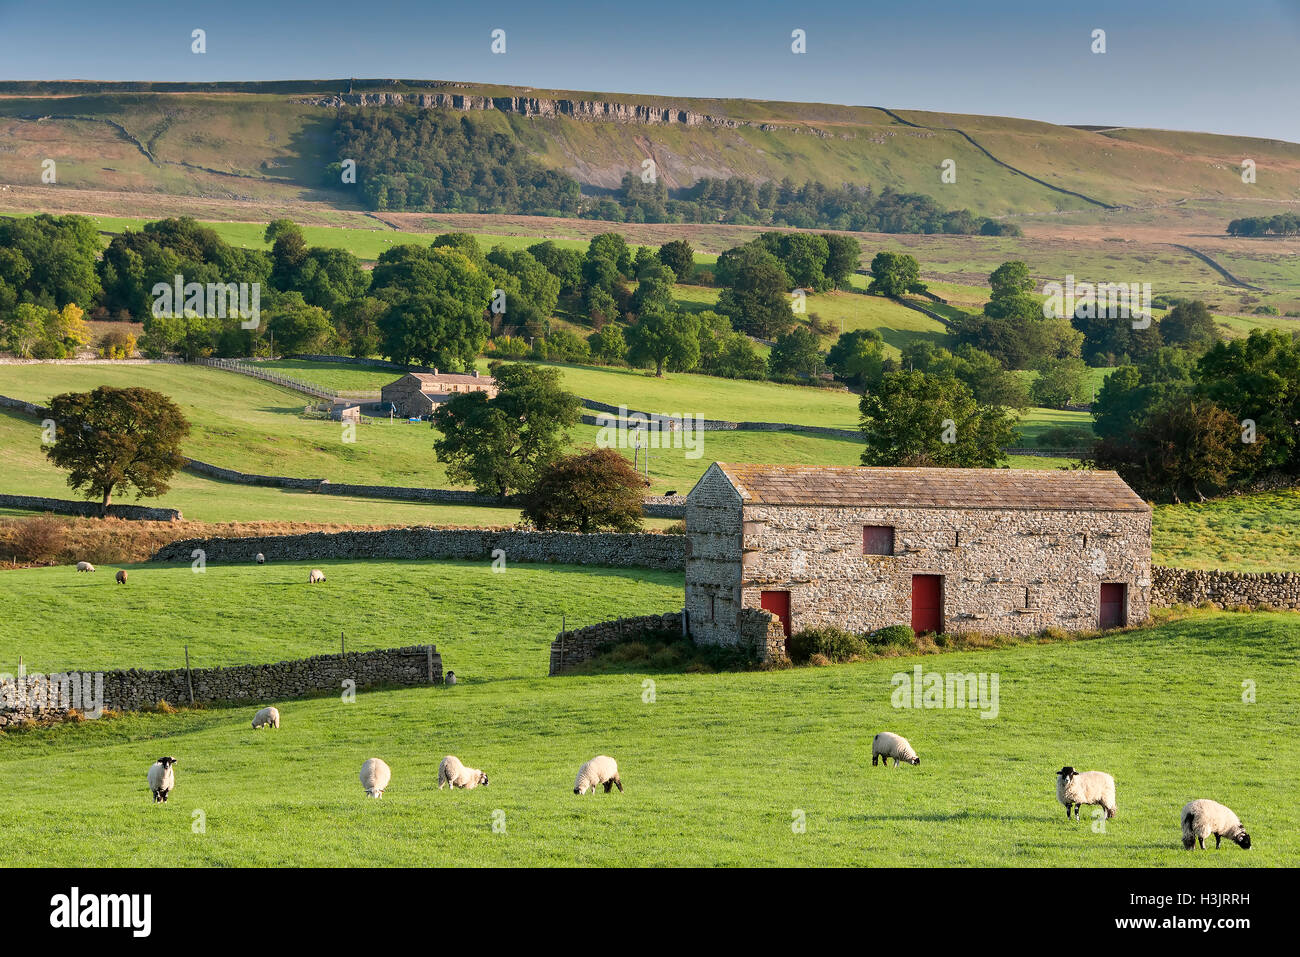 Flock of Sheep & Stone Barn, Wensleydale, Yorkshire Dales National Park, Yorkshire, England, UK Stock Photo